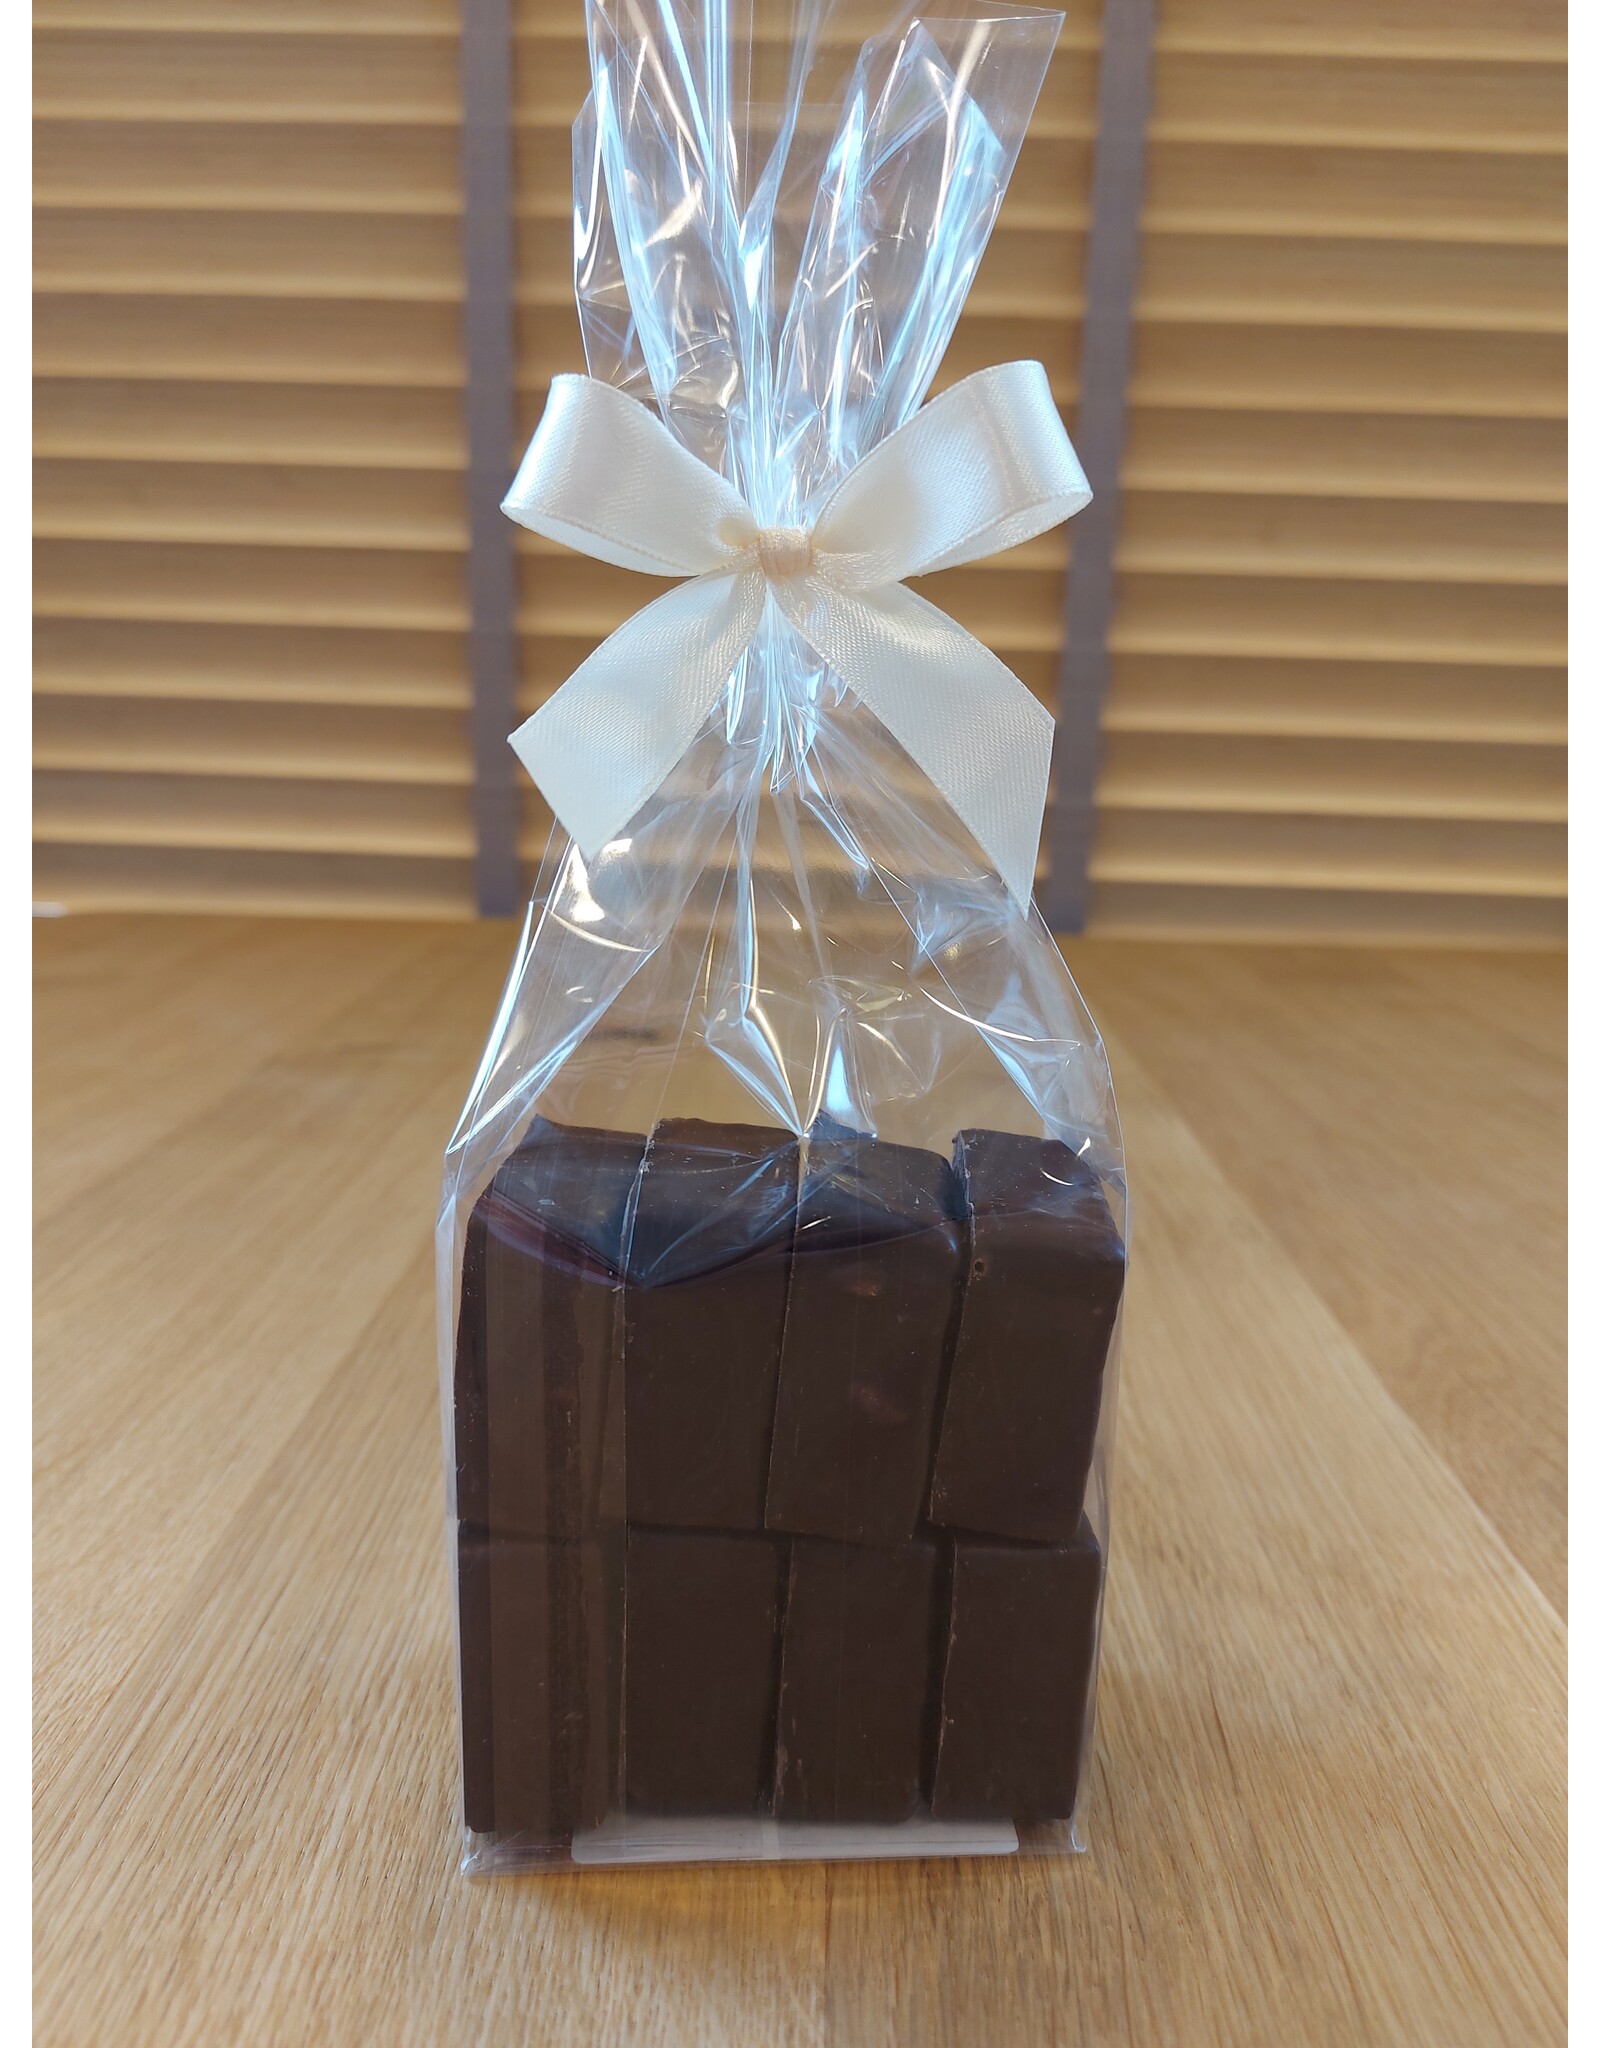 Artisanaal vierkantig chocolade spek - 8 stuks